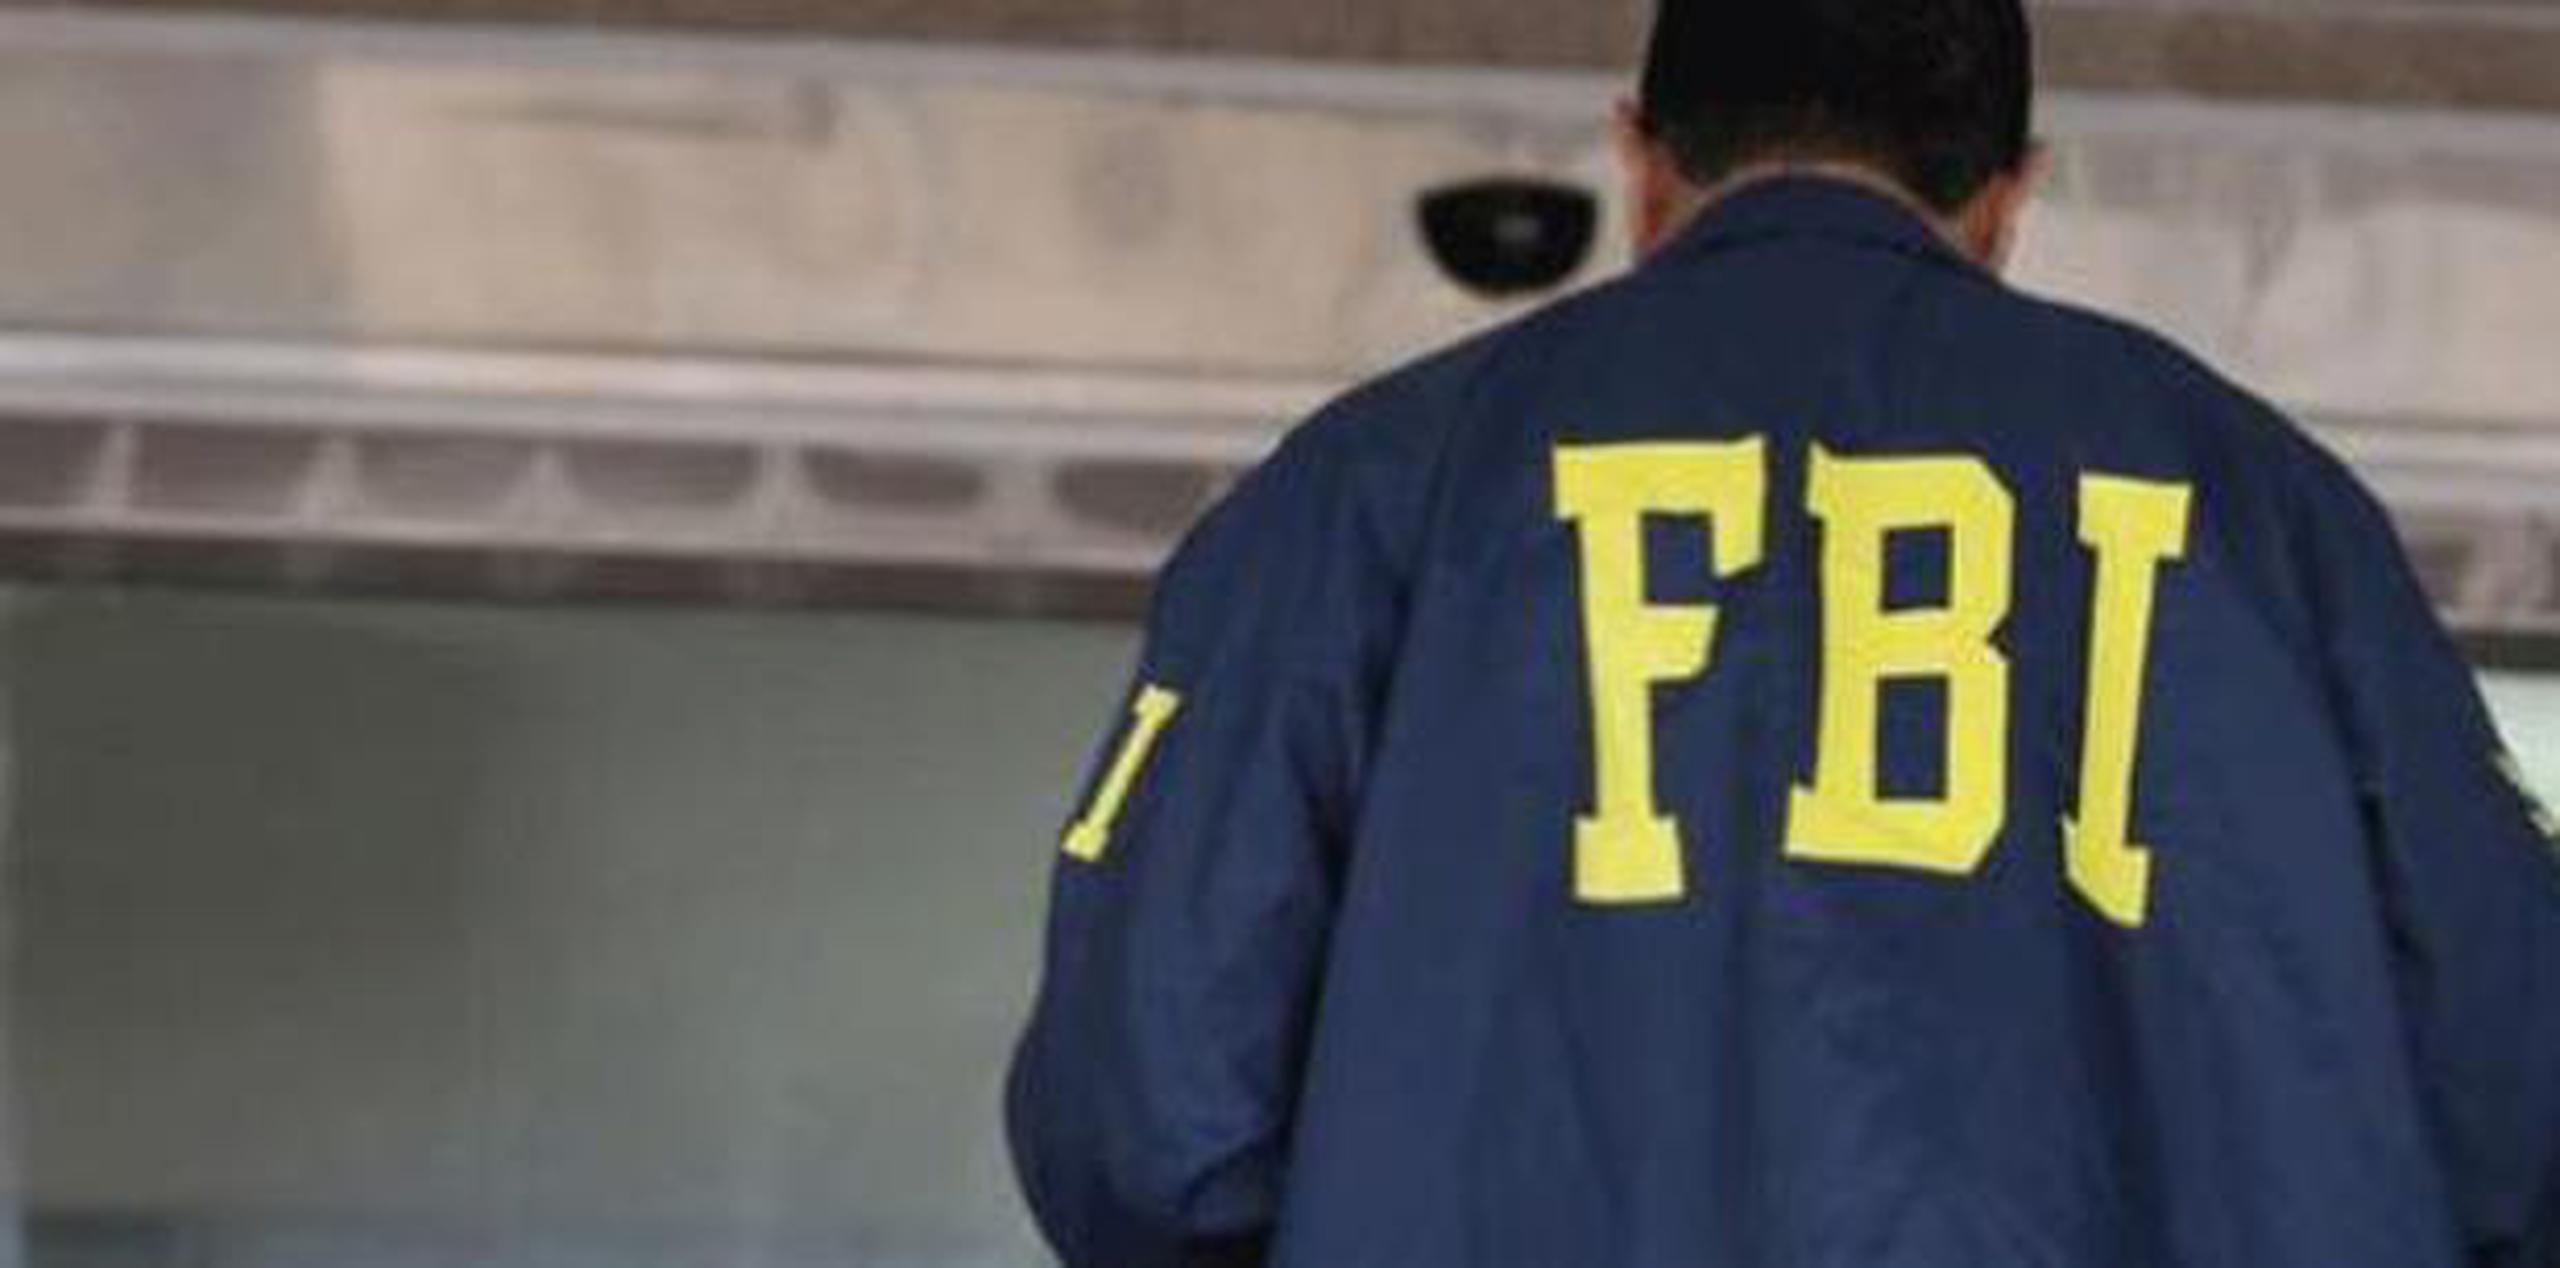 La empresa investigada por el FBI realiza labores de auditoría. (archivo)